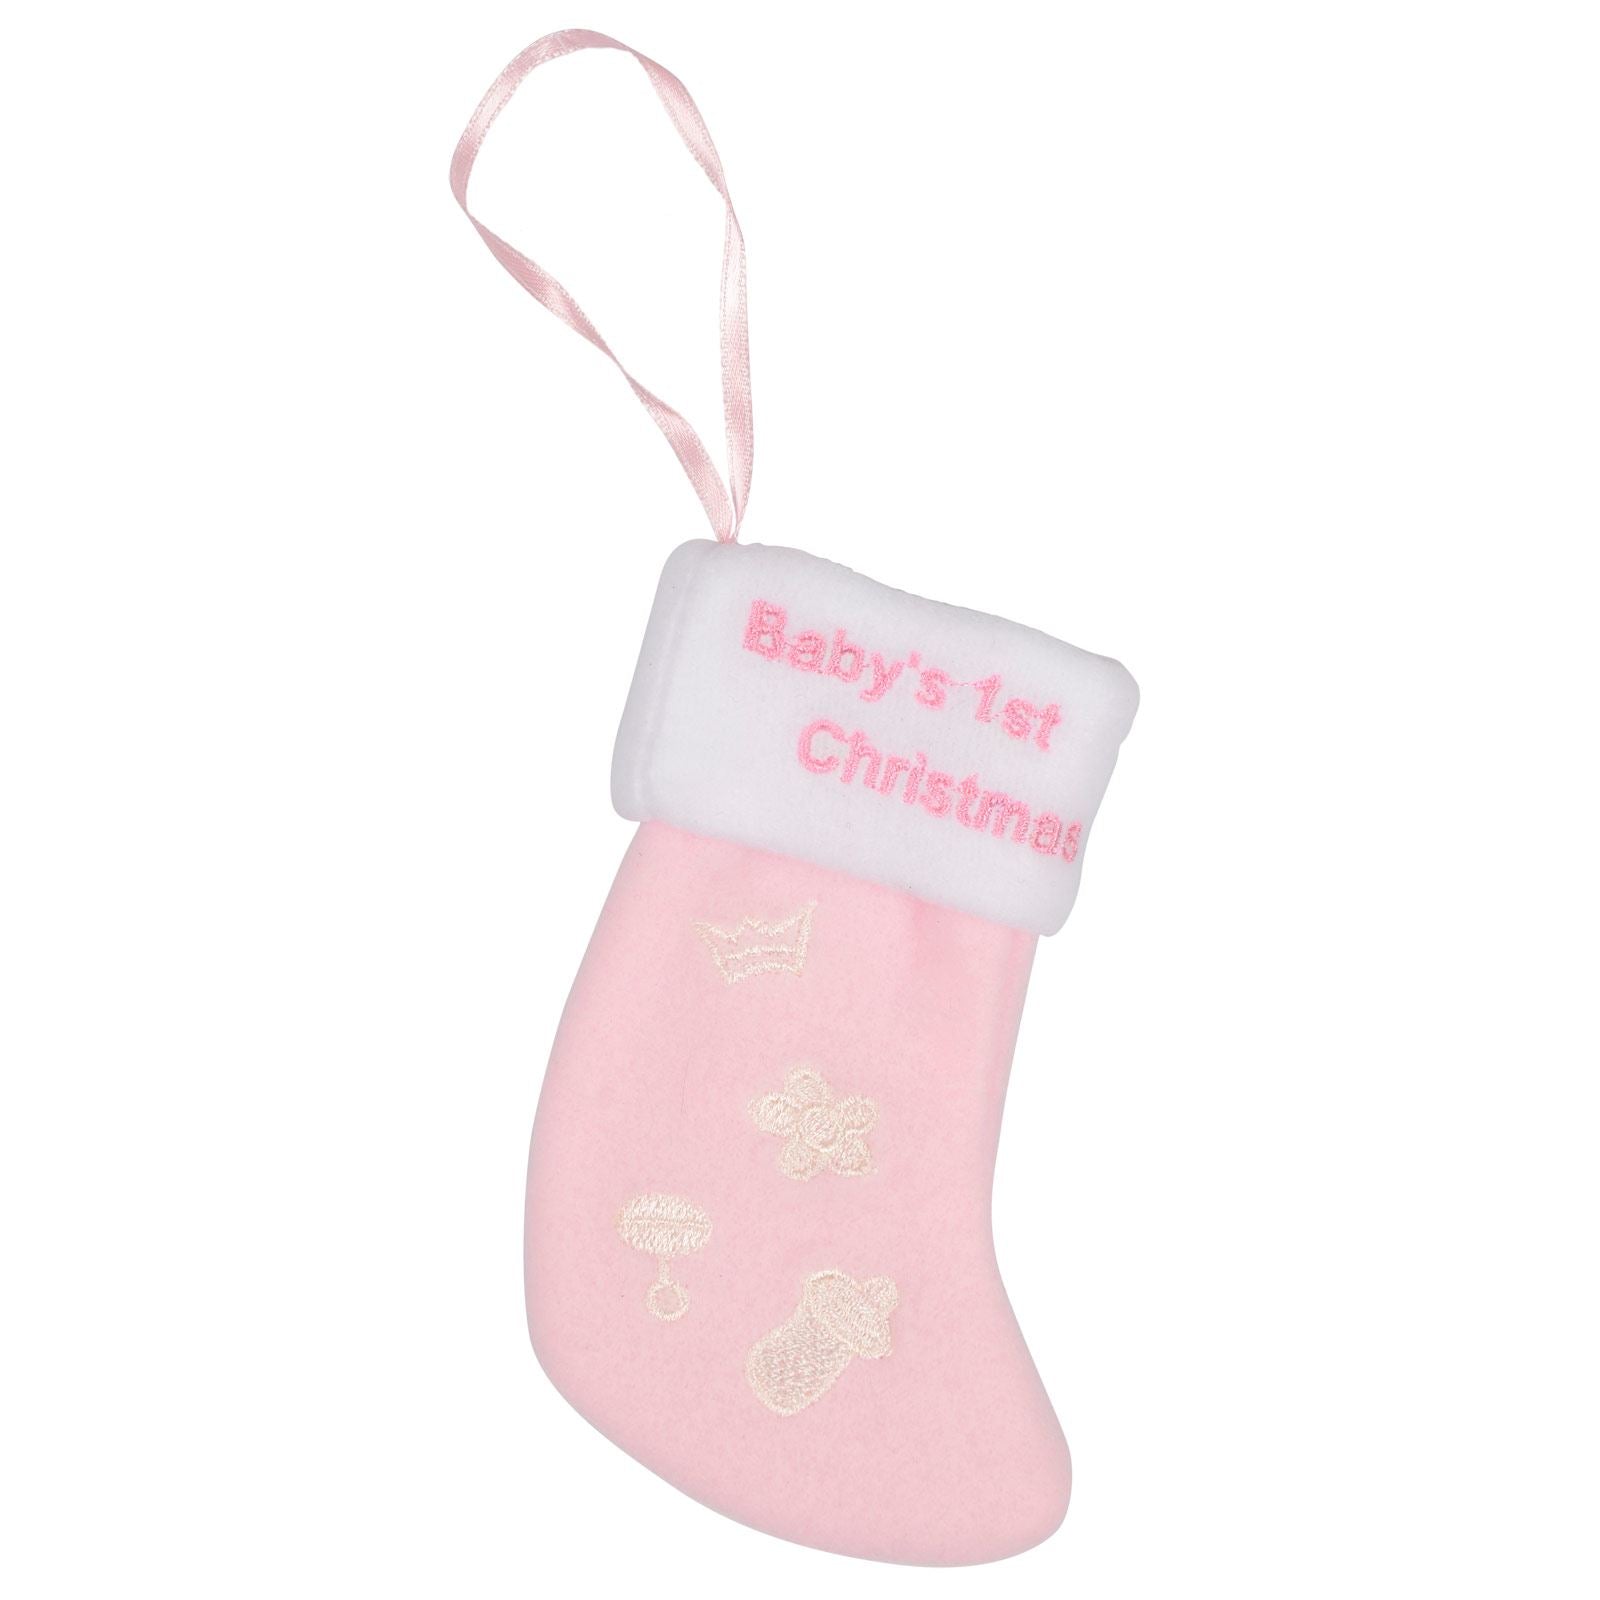 Mr Crimbo Baby 1st Christmas Stocking 5" Tree Decoration - MrCrimbo.co.uk -XS1767 - Pink -baby